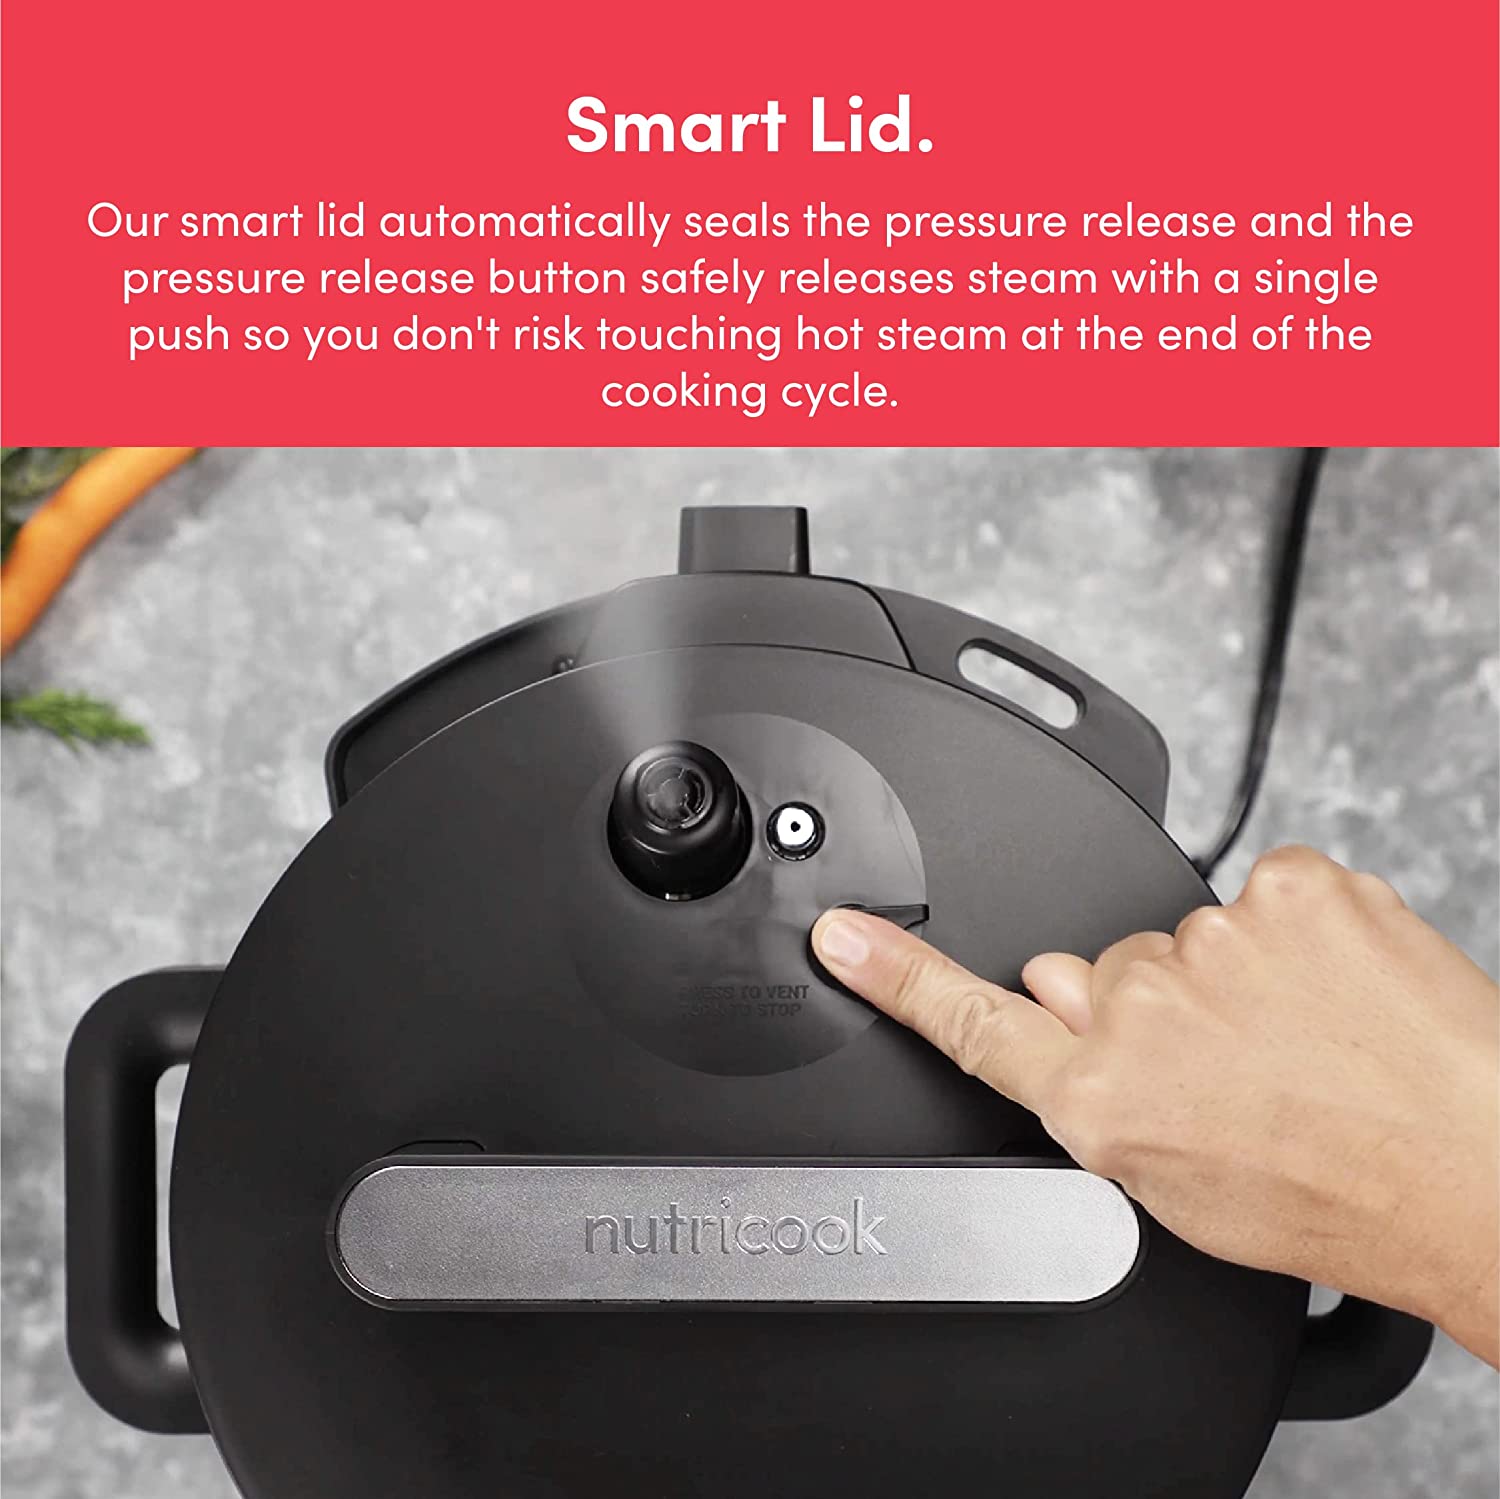 زود پز هوشمند  Nutricook Smart Pot 2 - ارسال ۱۰ الی ۱۵ روز کاری